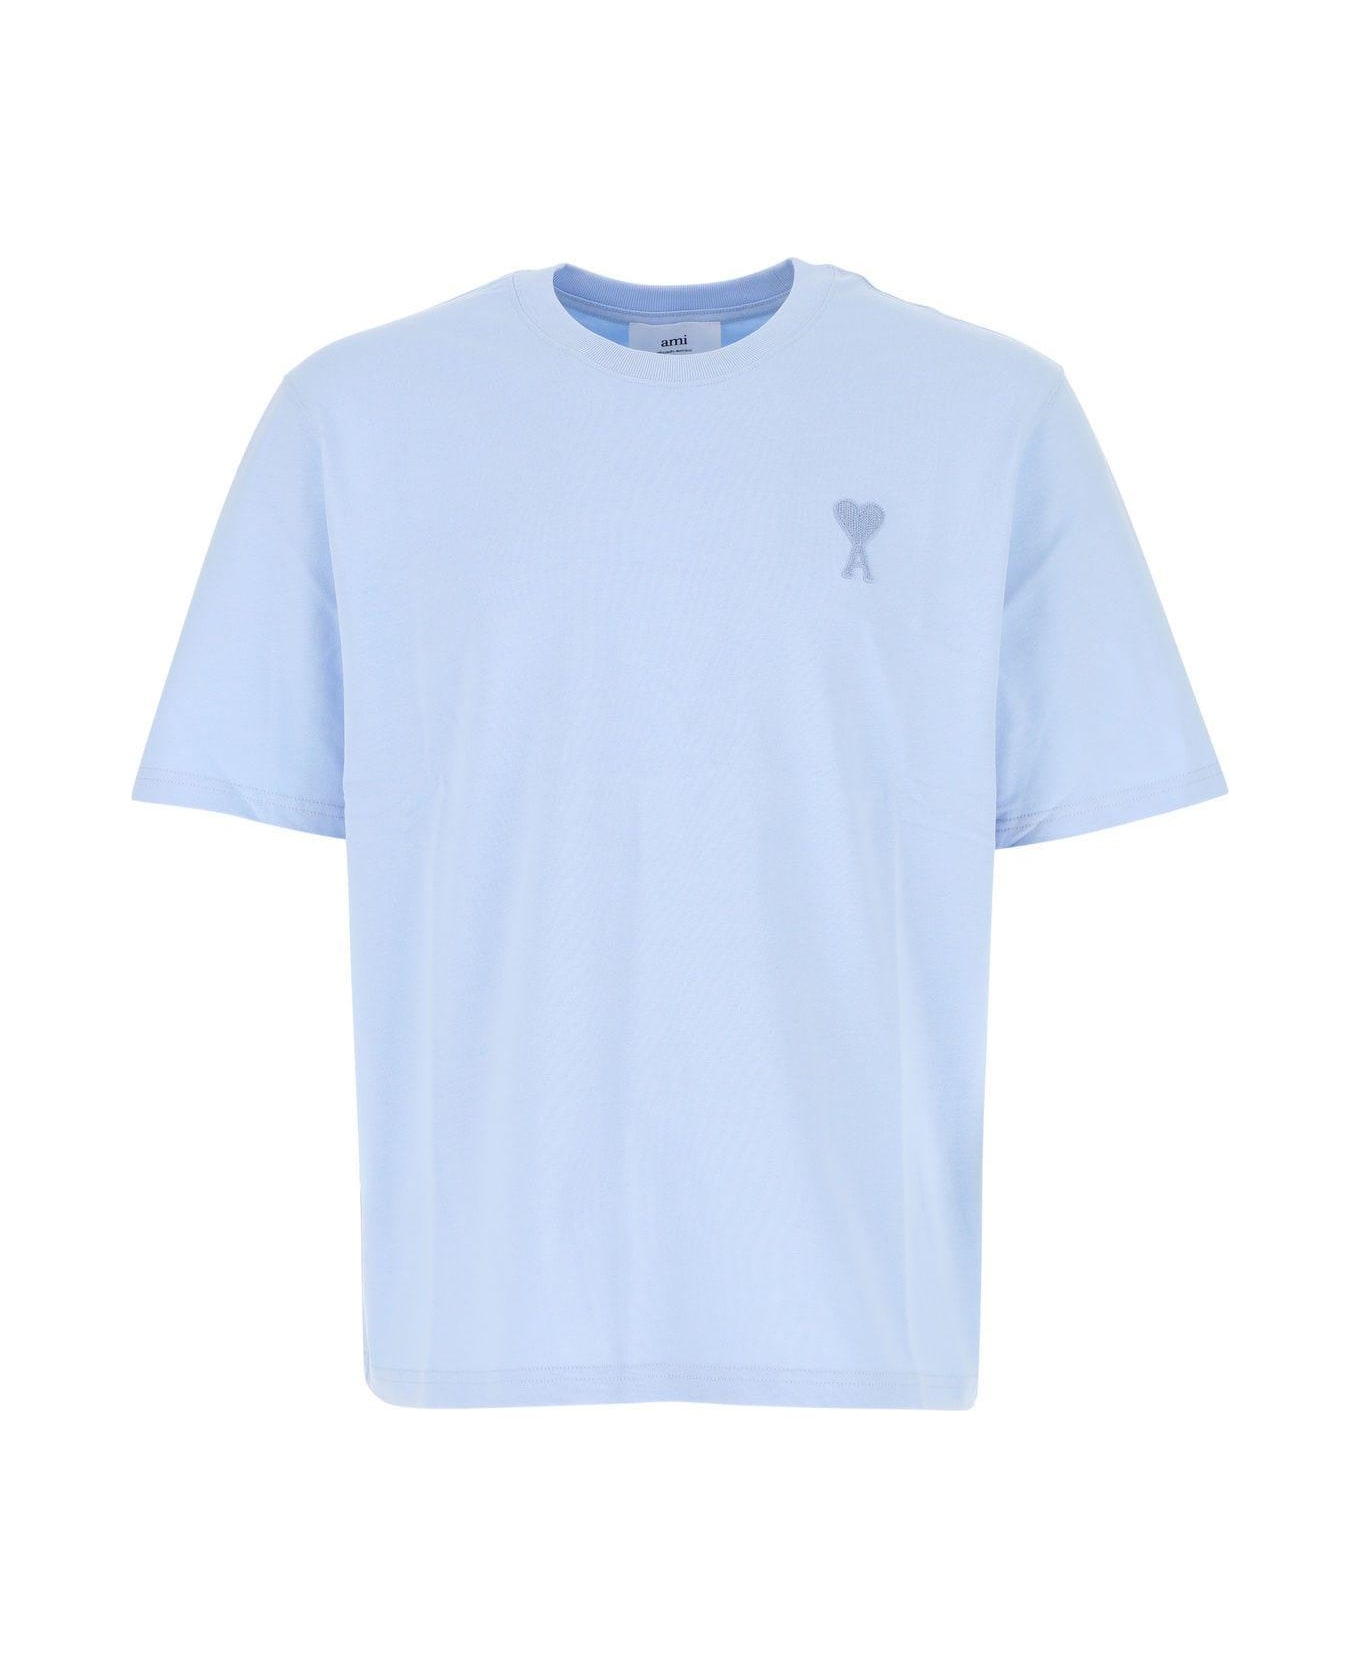 Ami Alexandre Mattiussi Light Blue Cotton Oversize T-shirt - Sky Blue